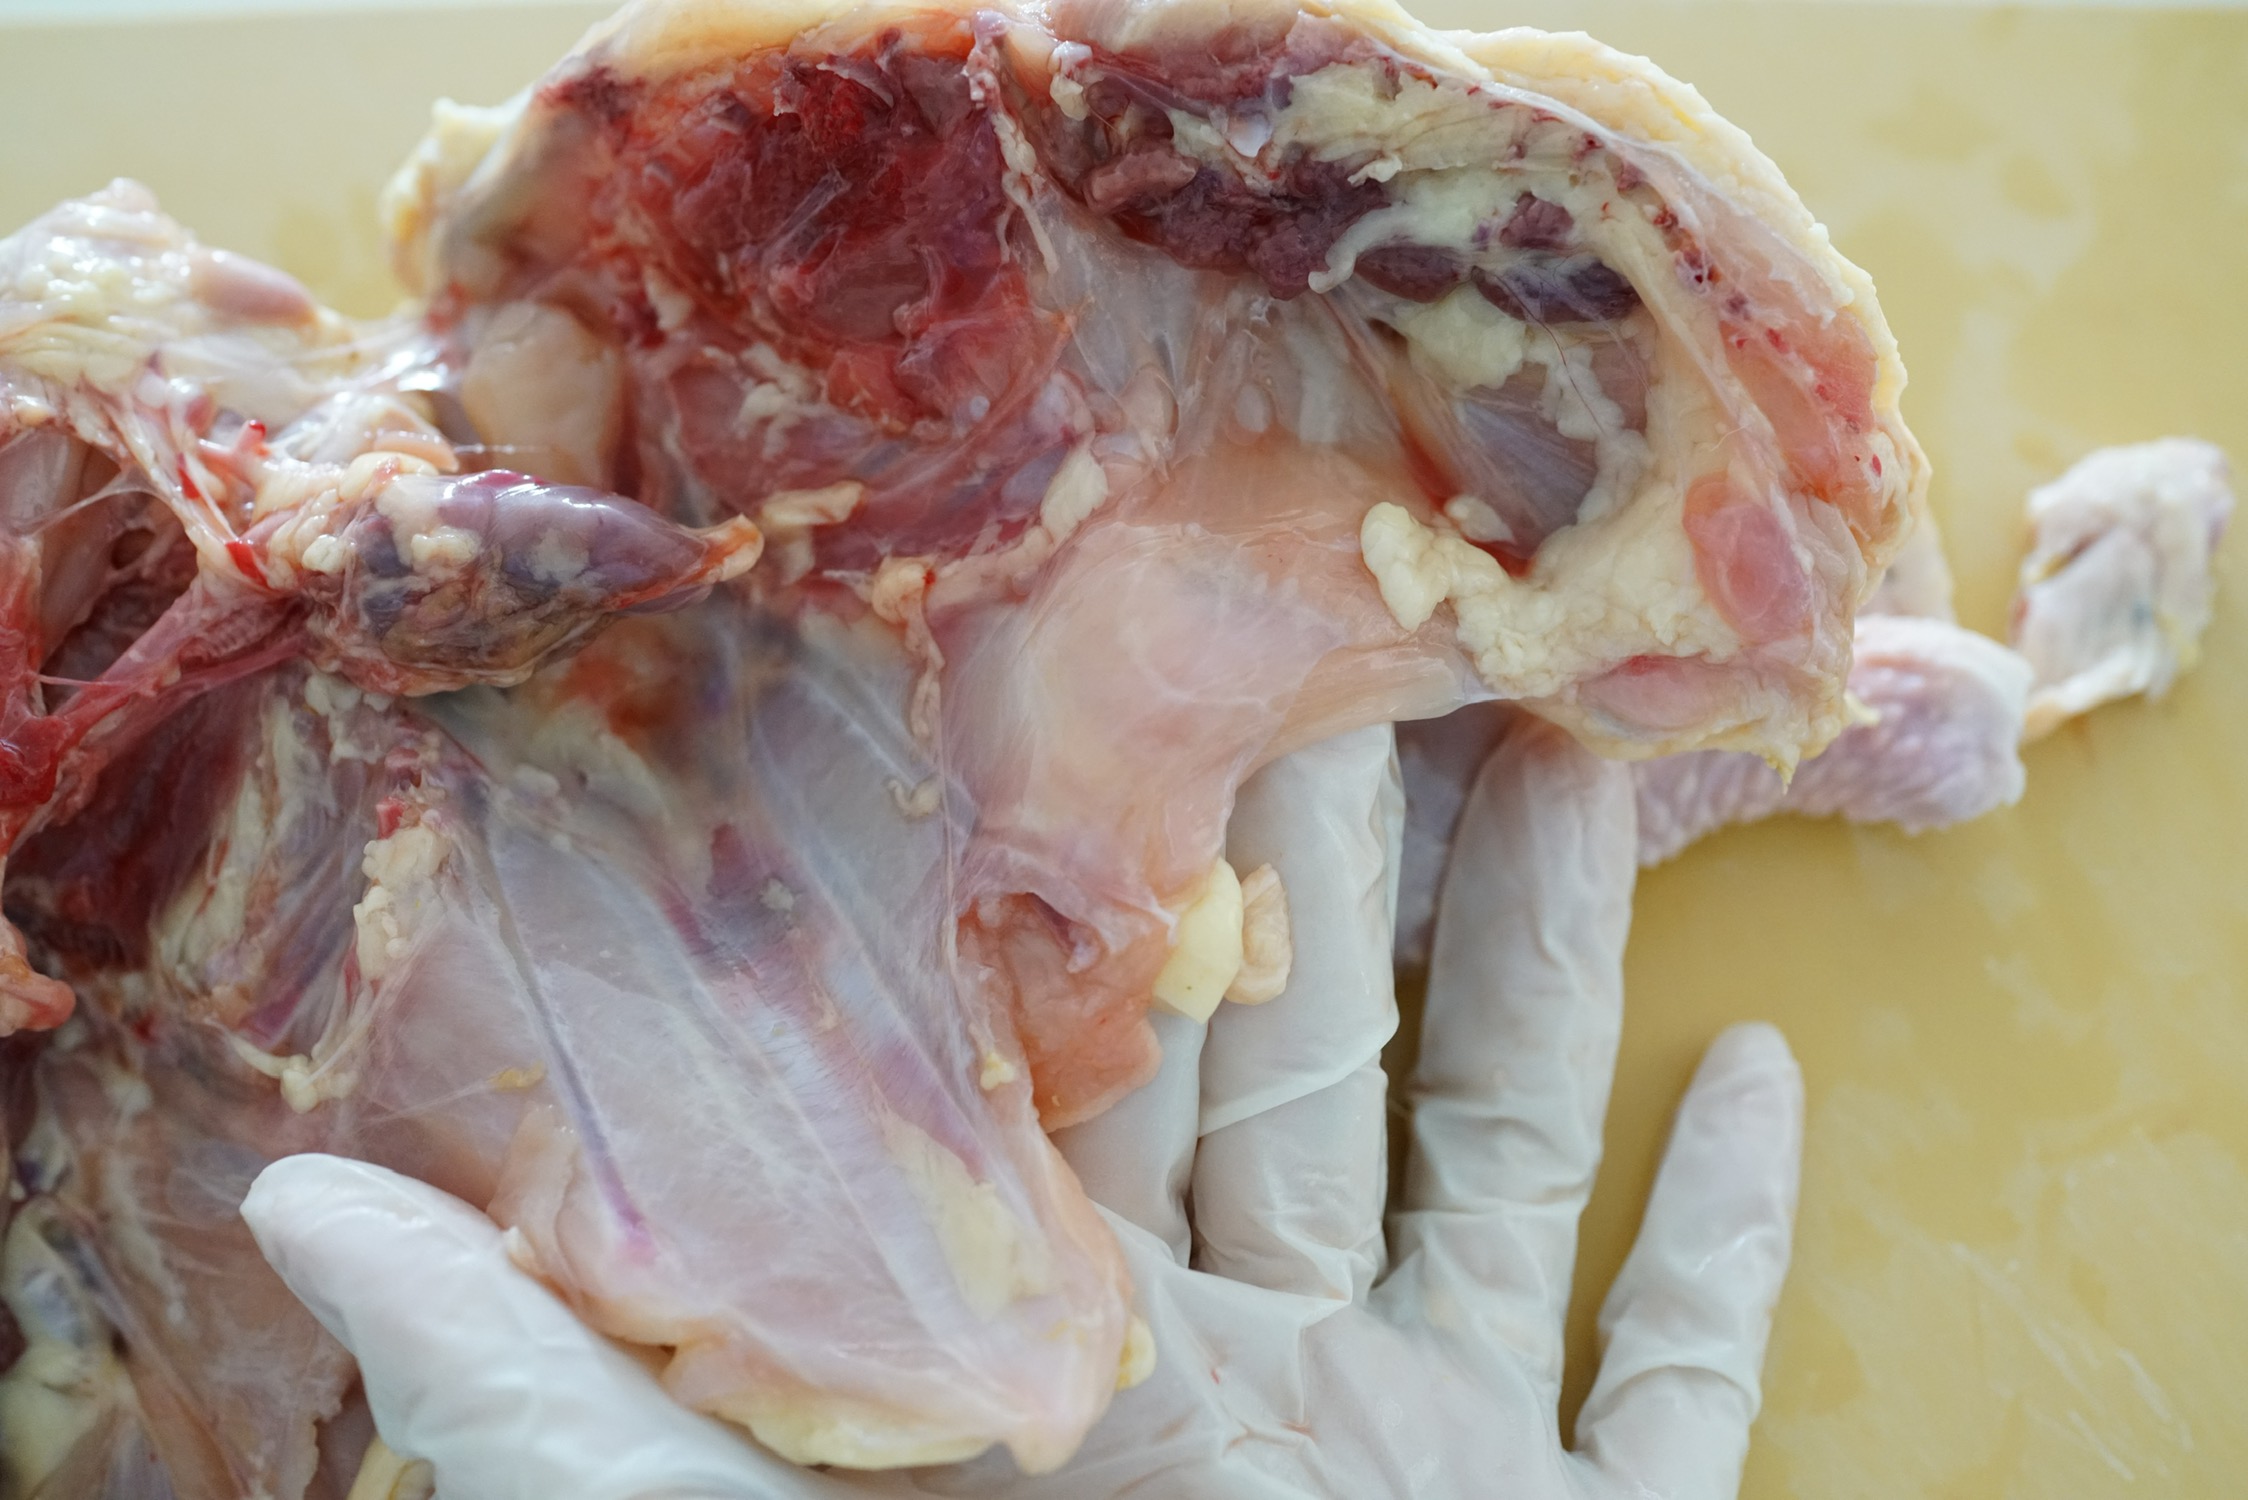 鸡94的横膈膜ハラミ,一层薄薄的肉膜,大部分切割方式会舍弃不